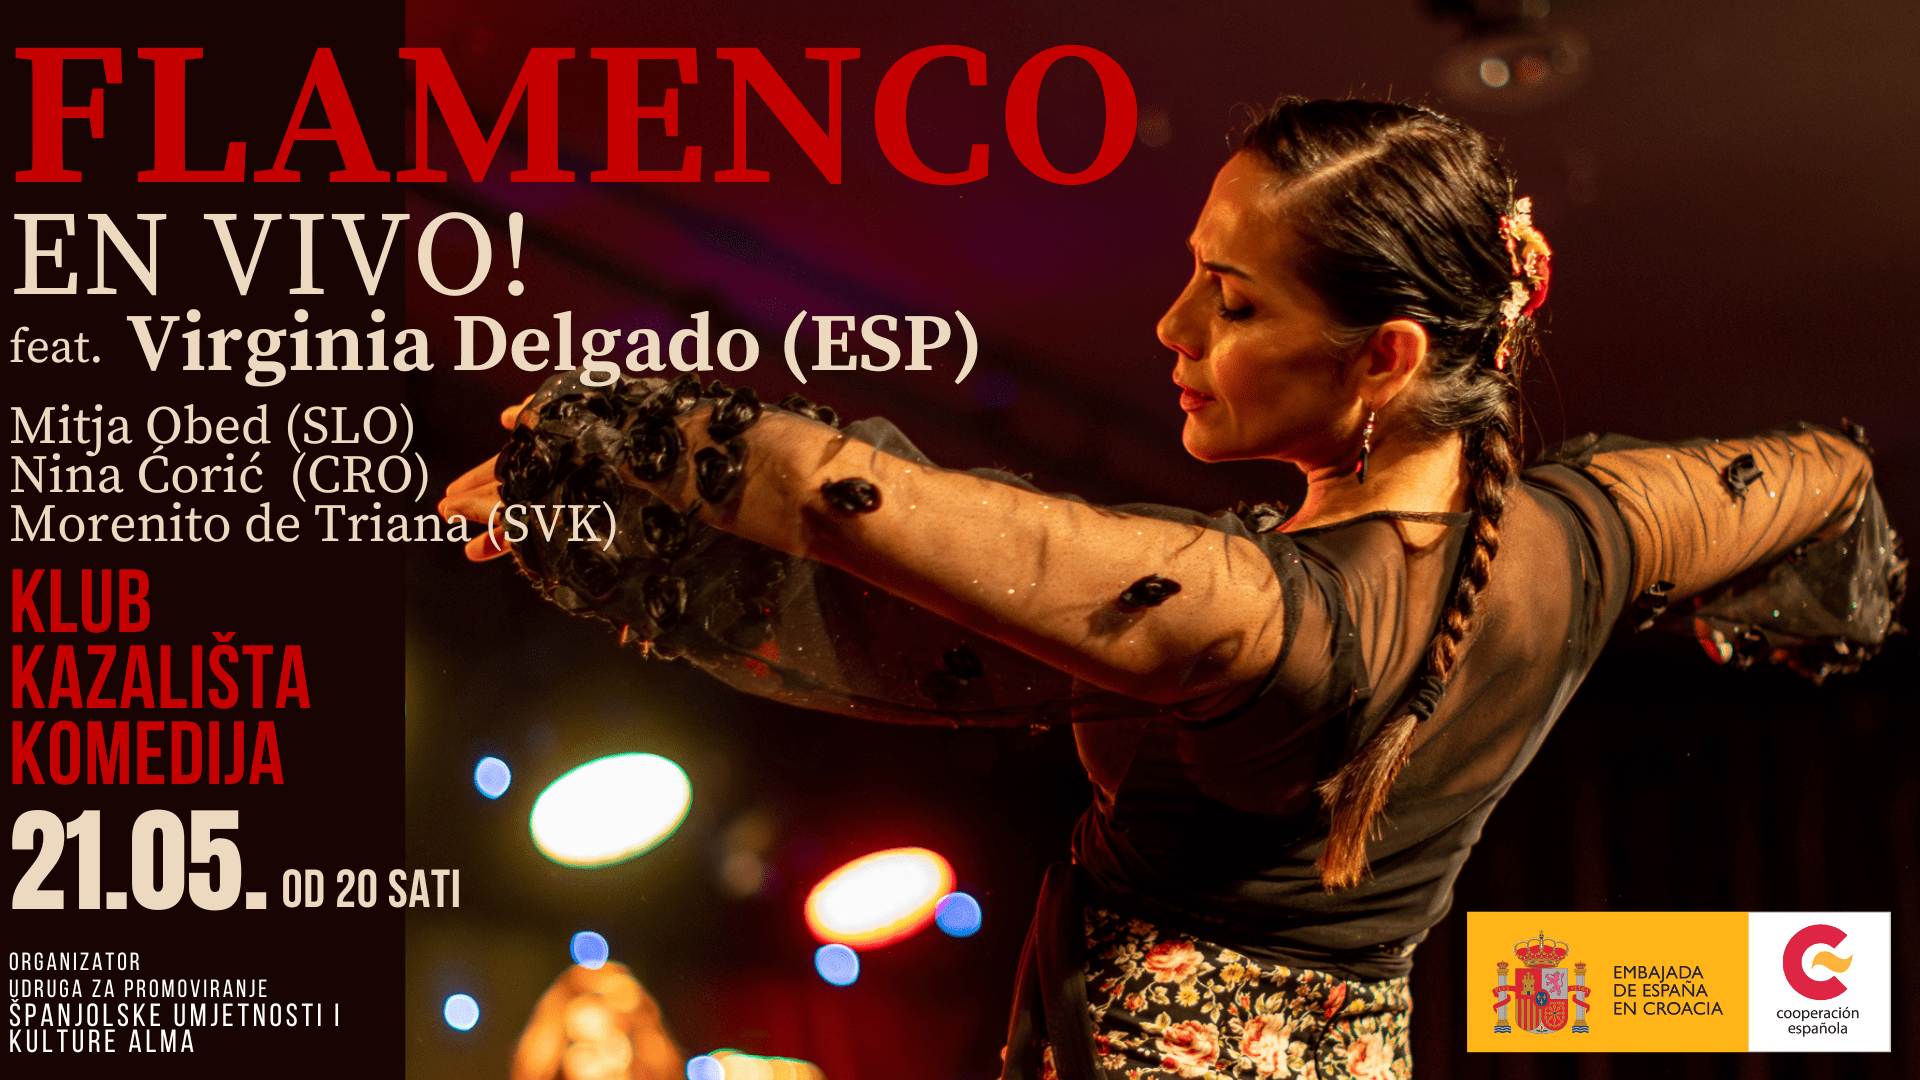 Flamenco en vivo!